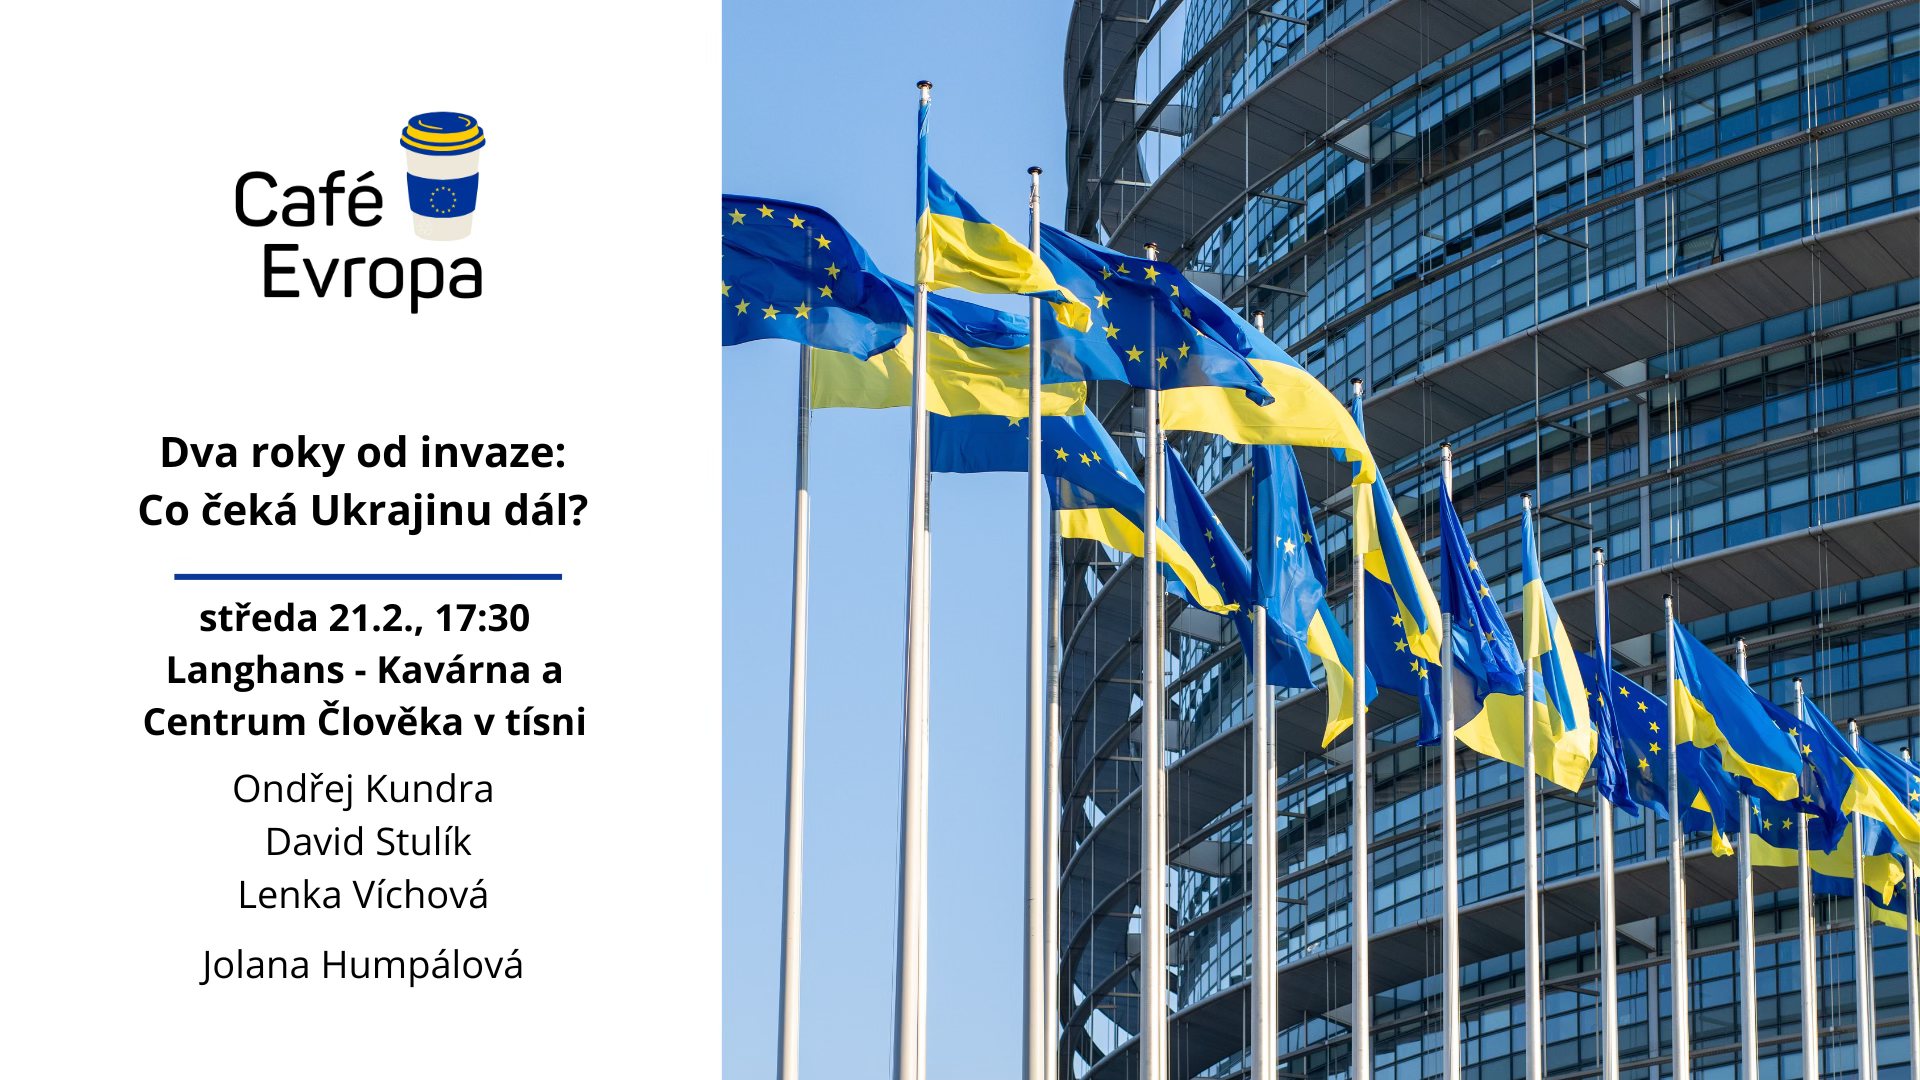 Pozvánka Cafe Evropa Ukrajina - na fotce vlajky EU a Ukrajiny a budova